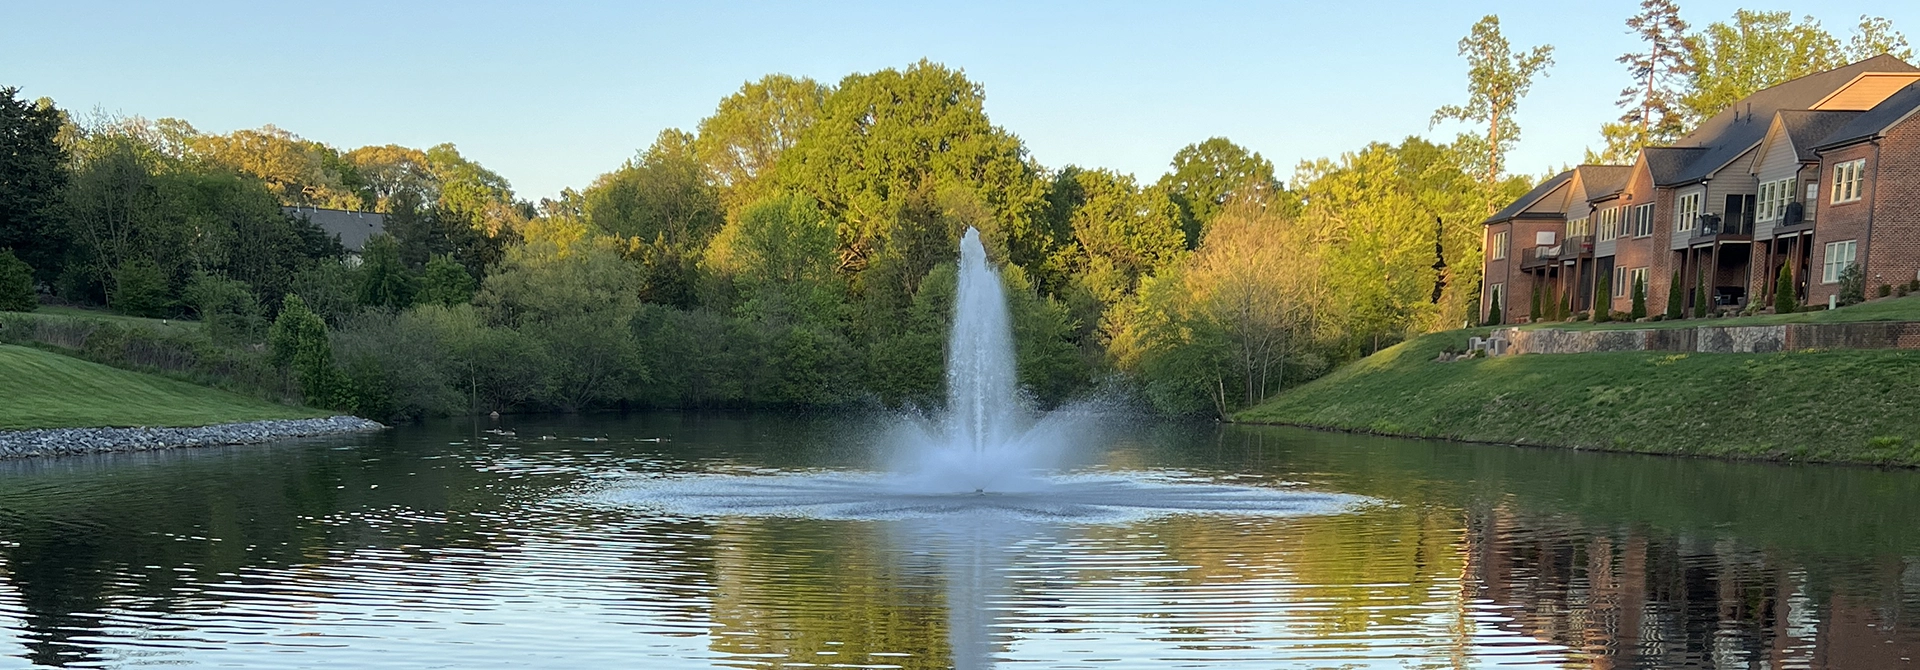 Pond Fountains in Greensboro, North Carolina